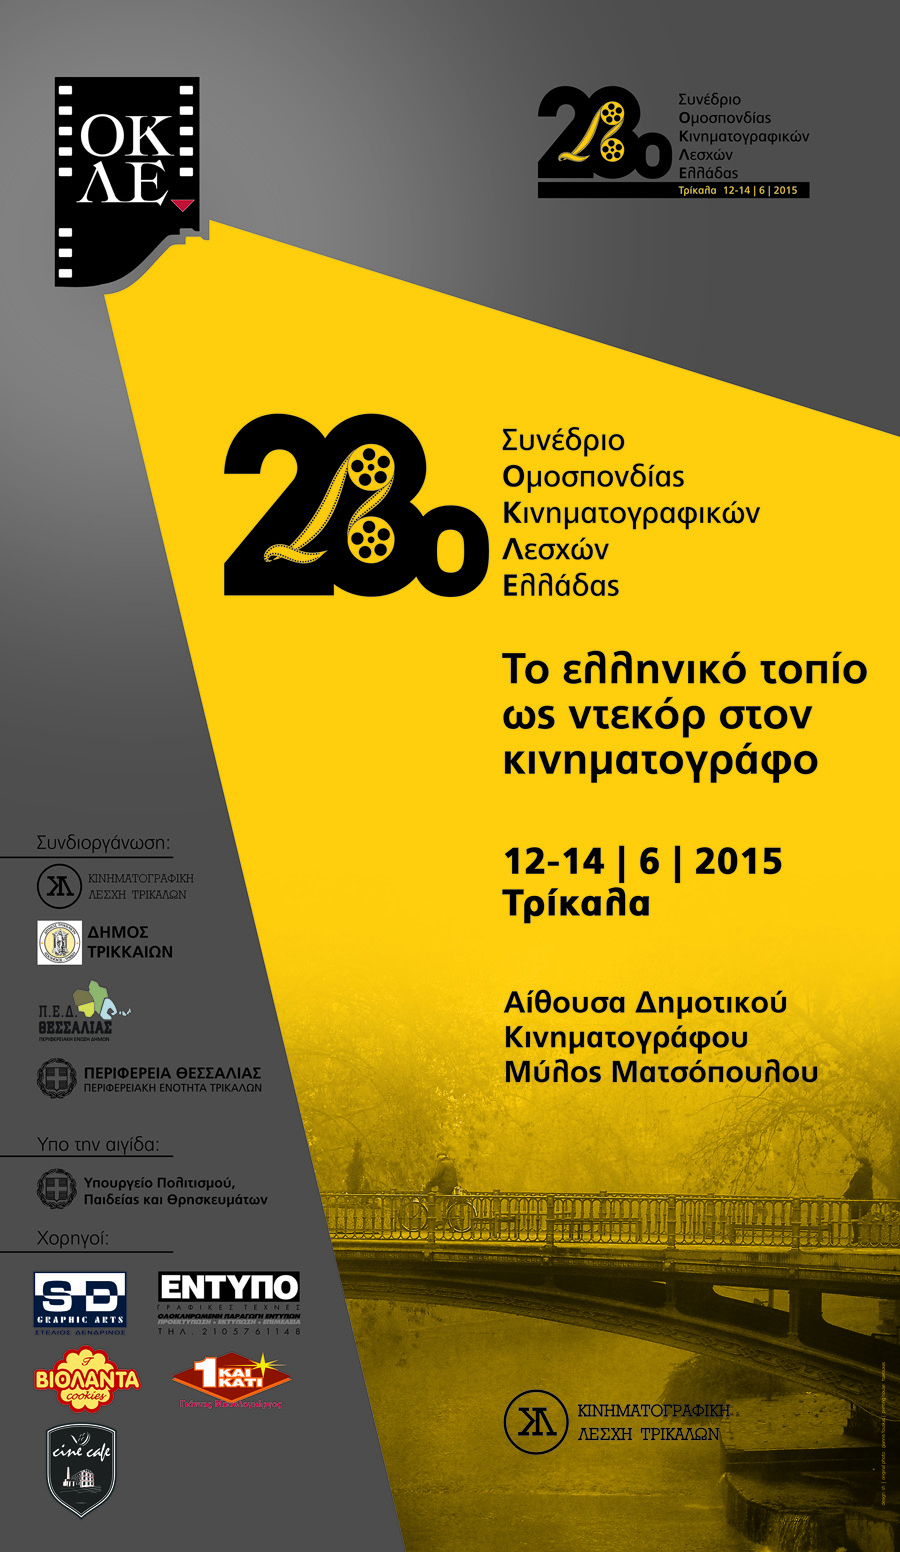 Ξεκινά το συνέδριο των Κινηματογραφικών Λεσχών Ελλάδας 